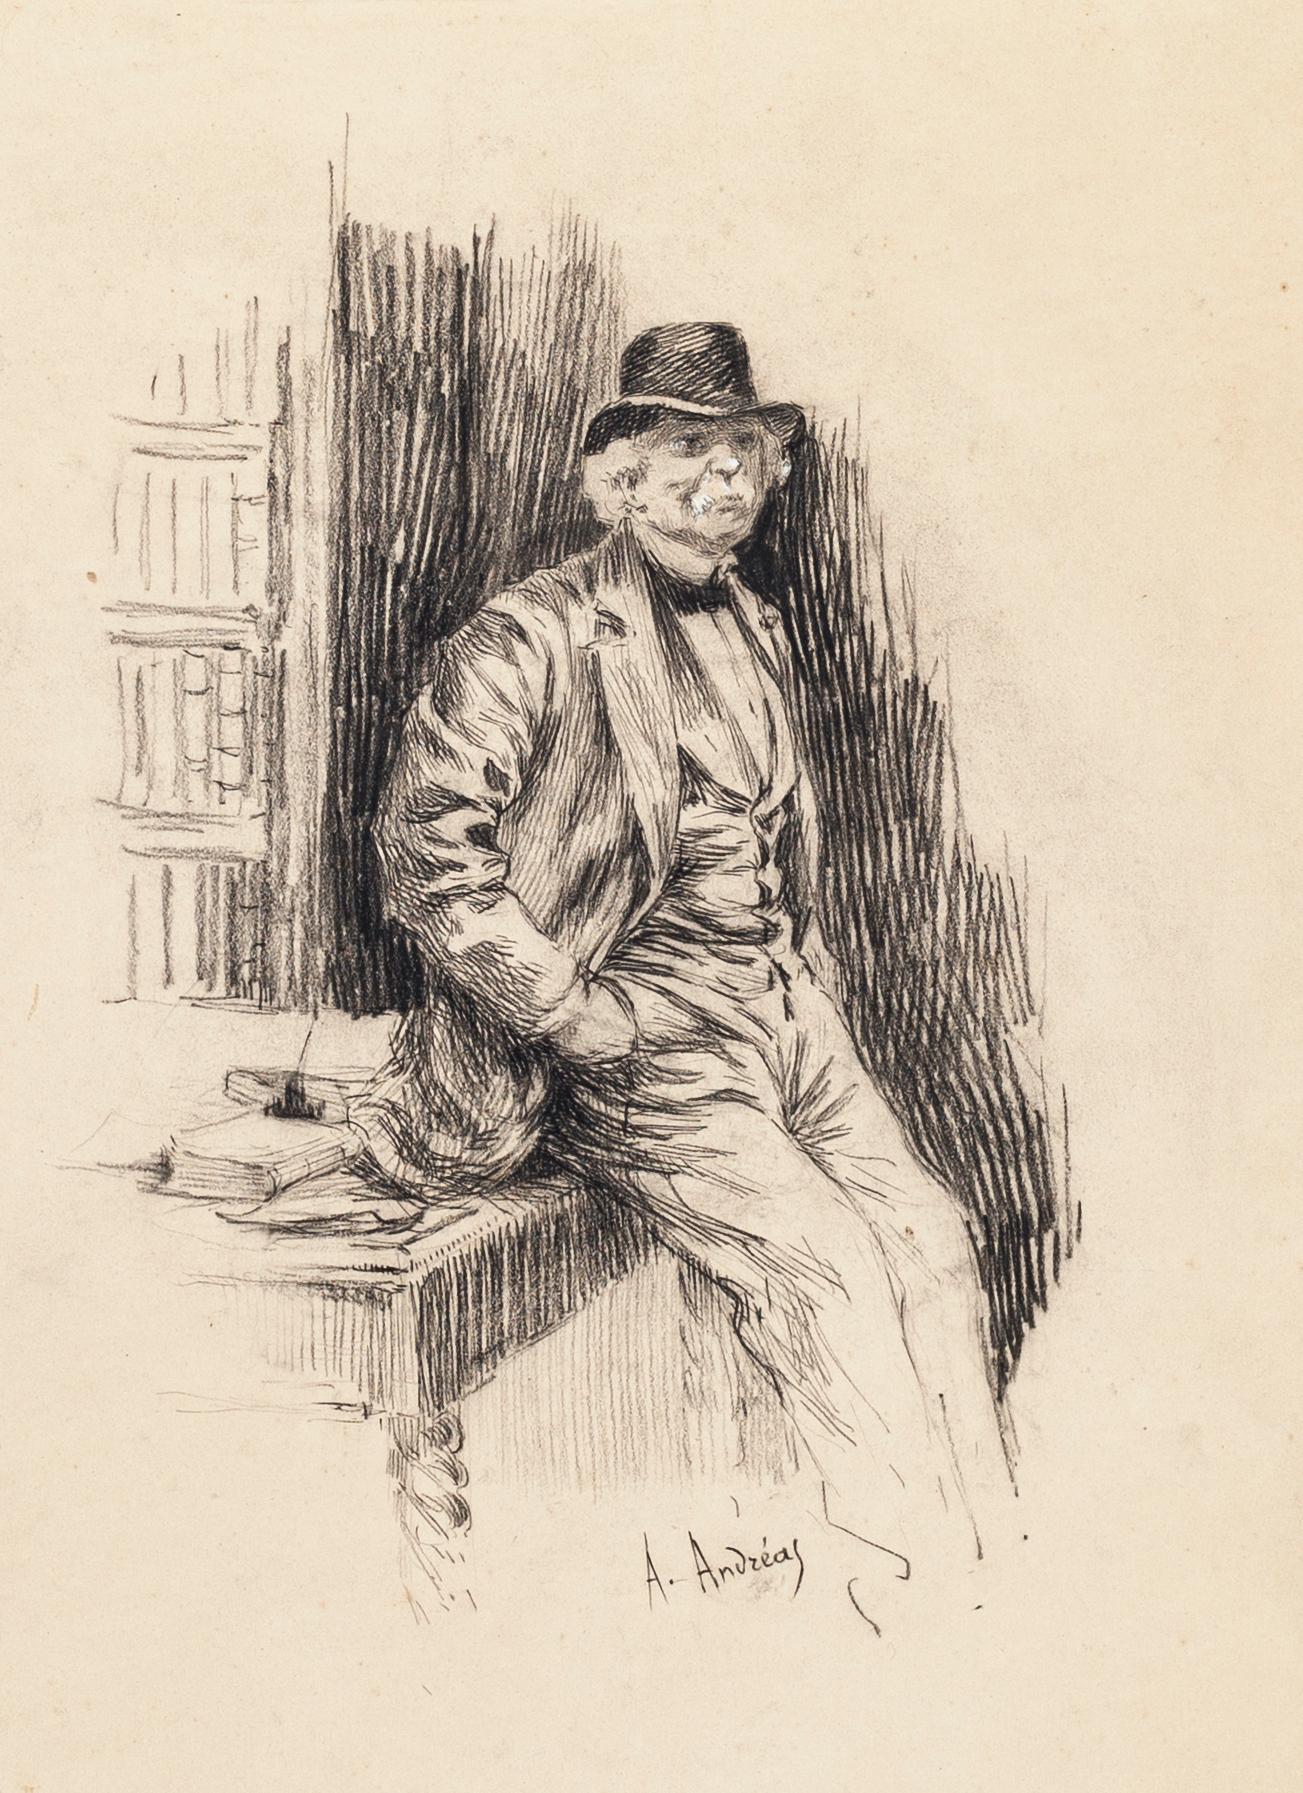 Retrato de caballero - Litografía original de A. Achenbach - Finales del siglo XIX